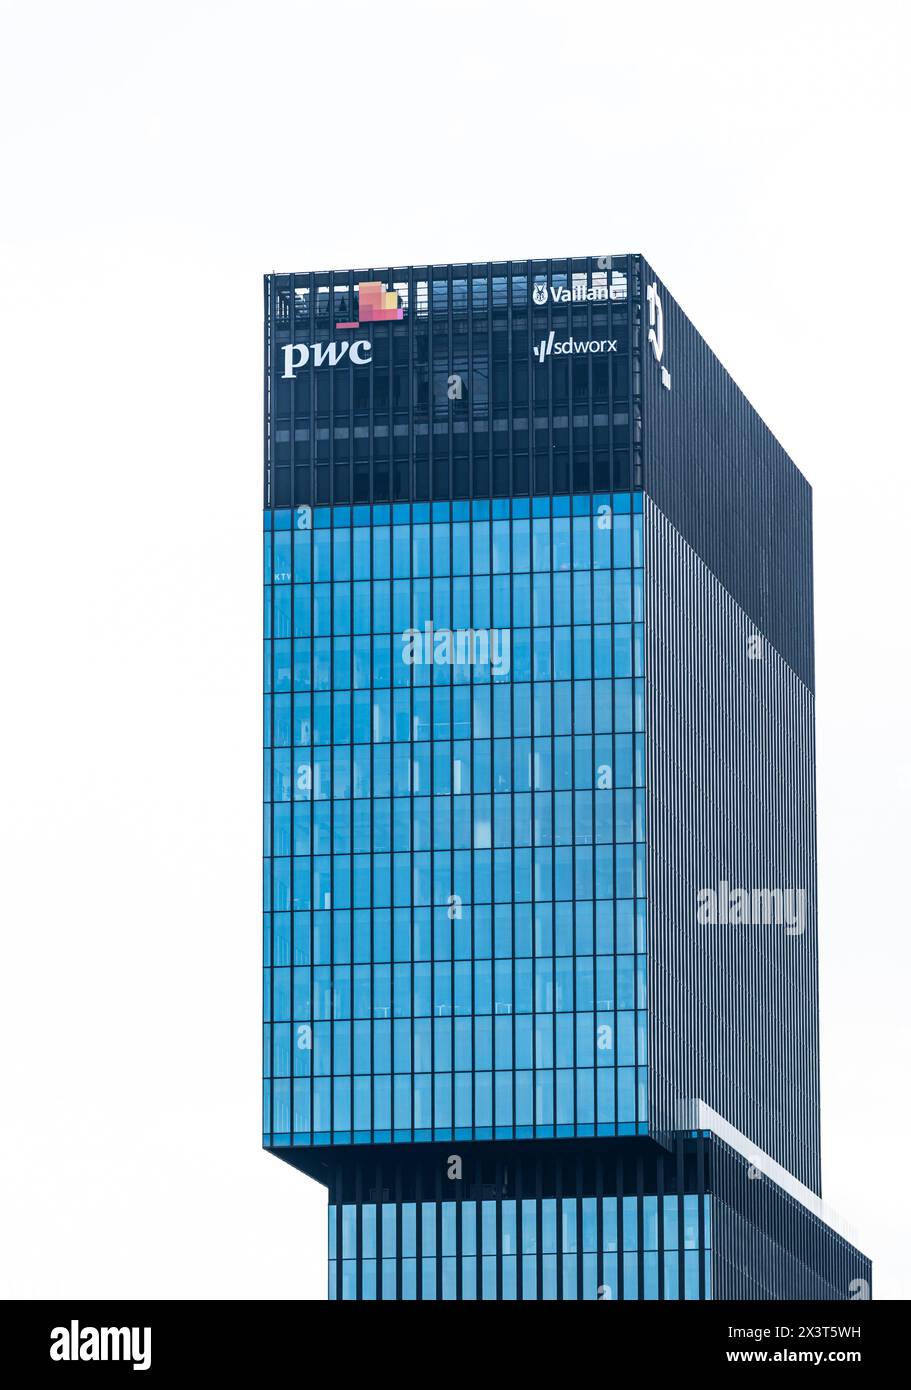 Katowice, Silésie, Pologne, 24 mars 2024 - immeuble de bureaux contemporain en verre et acier de PWC, Panattoni et d'autres sociétés de services Banque D'Images